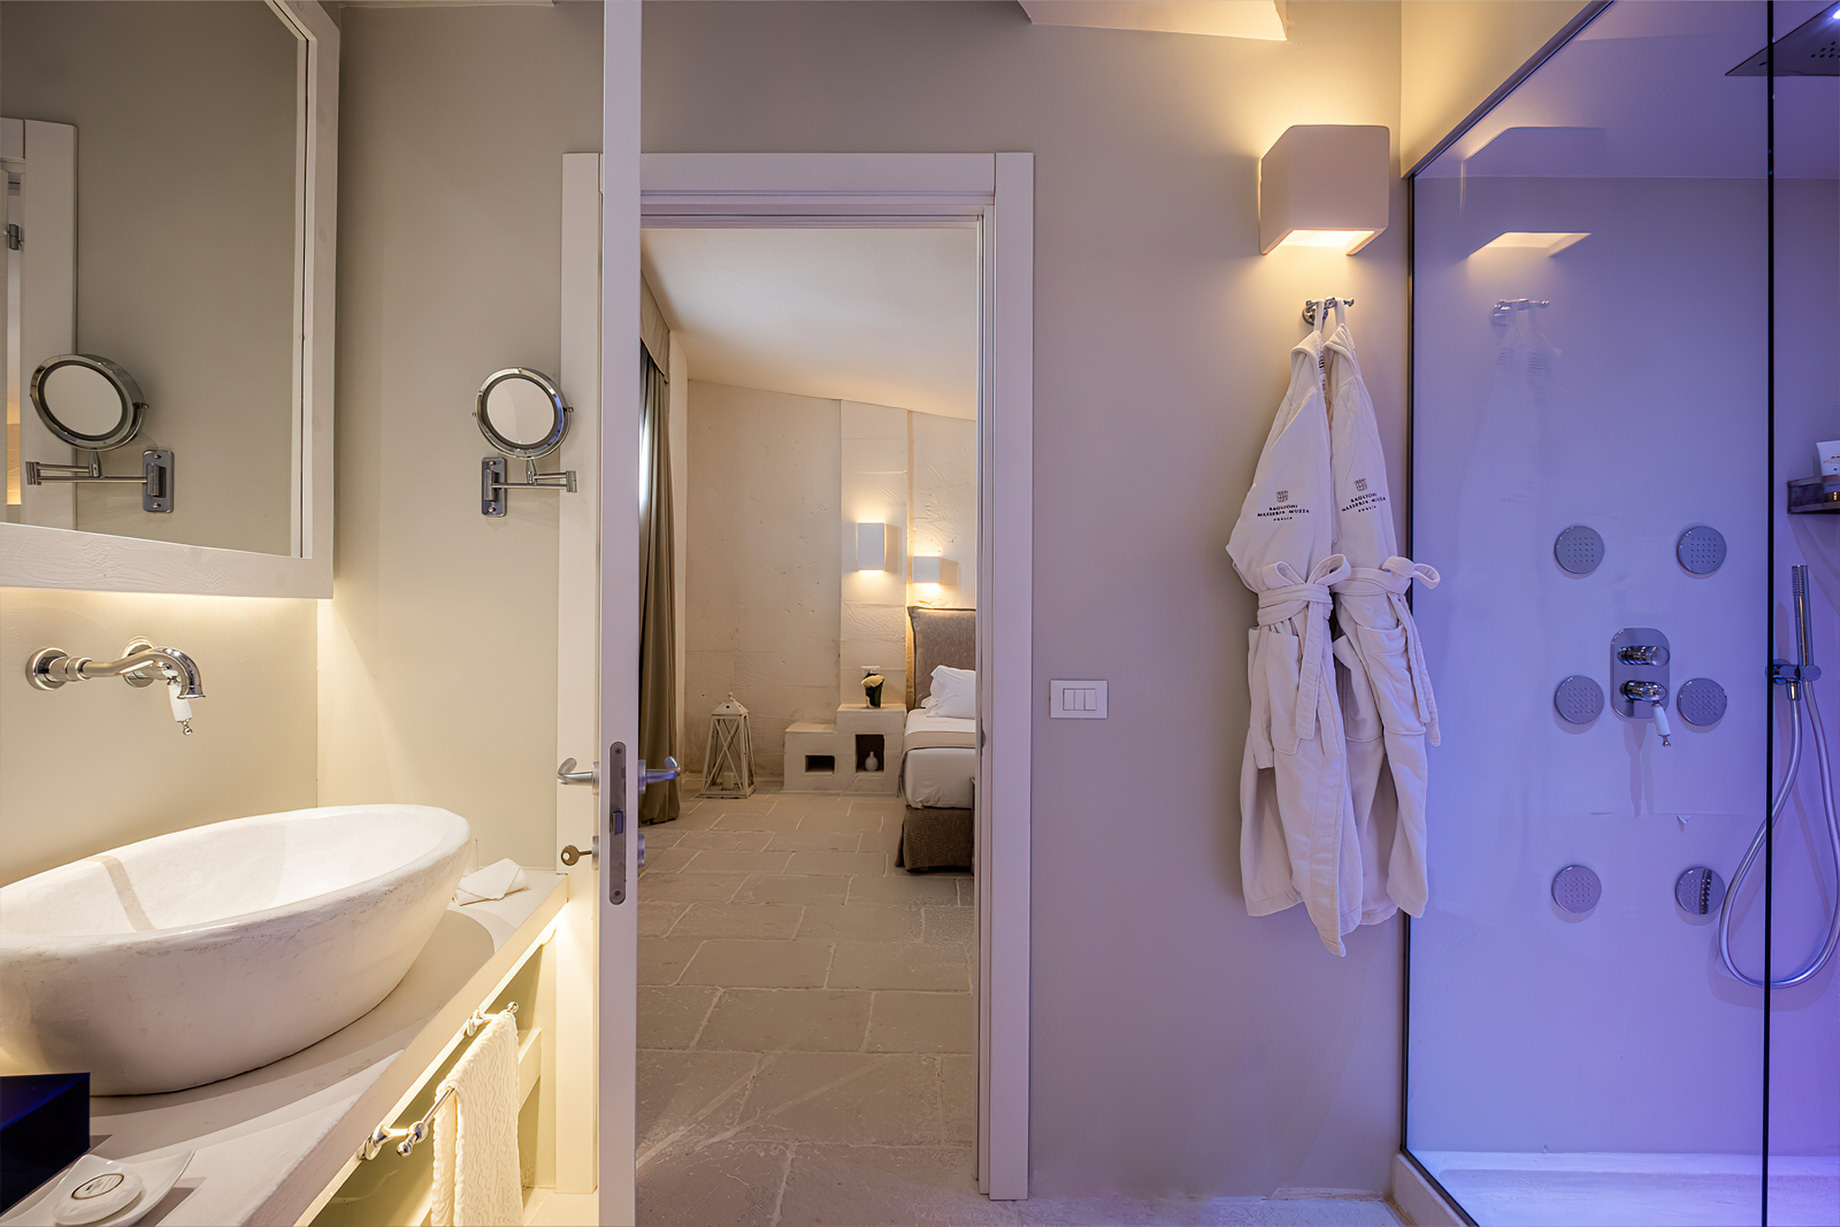 Baglioni Masseria Muzza Hotel – Puglia, Italy – Executive Suite Bathroom